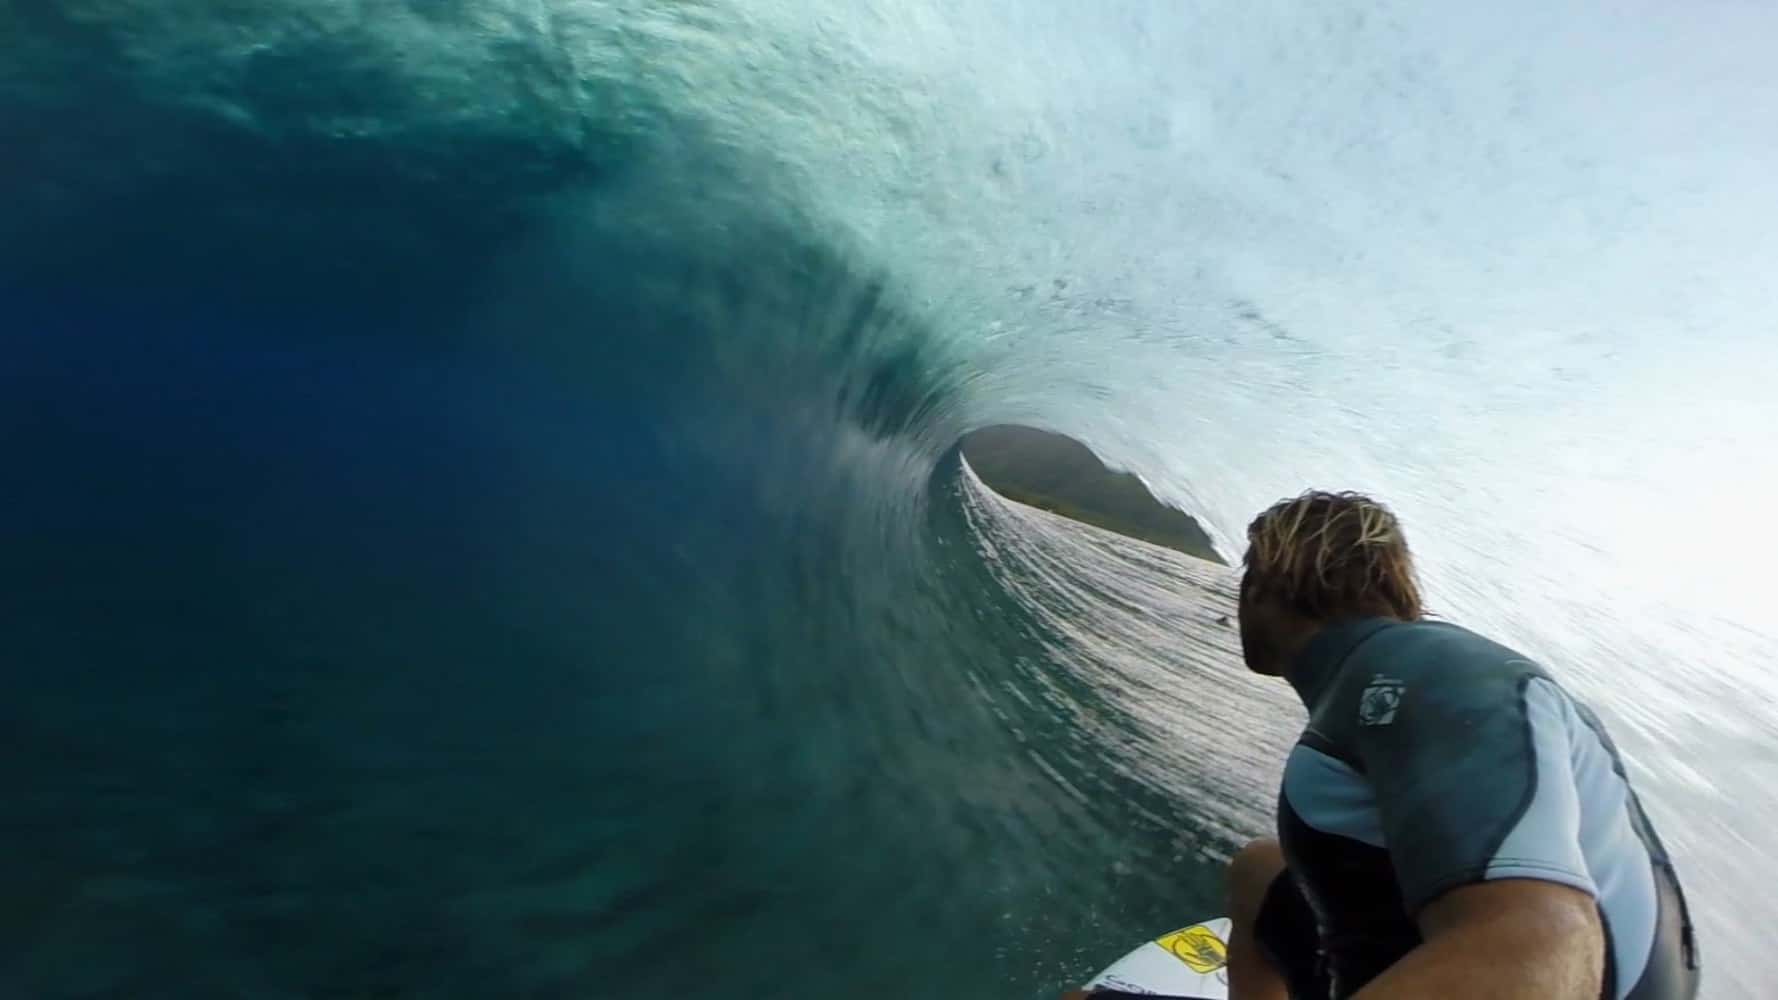 Metete al agua a surfear ahora en Tahiti, cámara 360